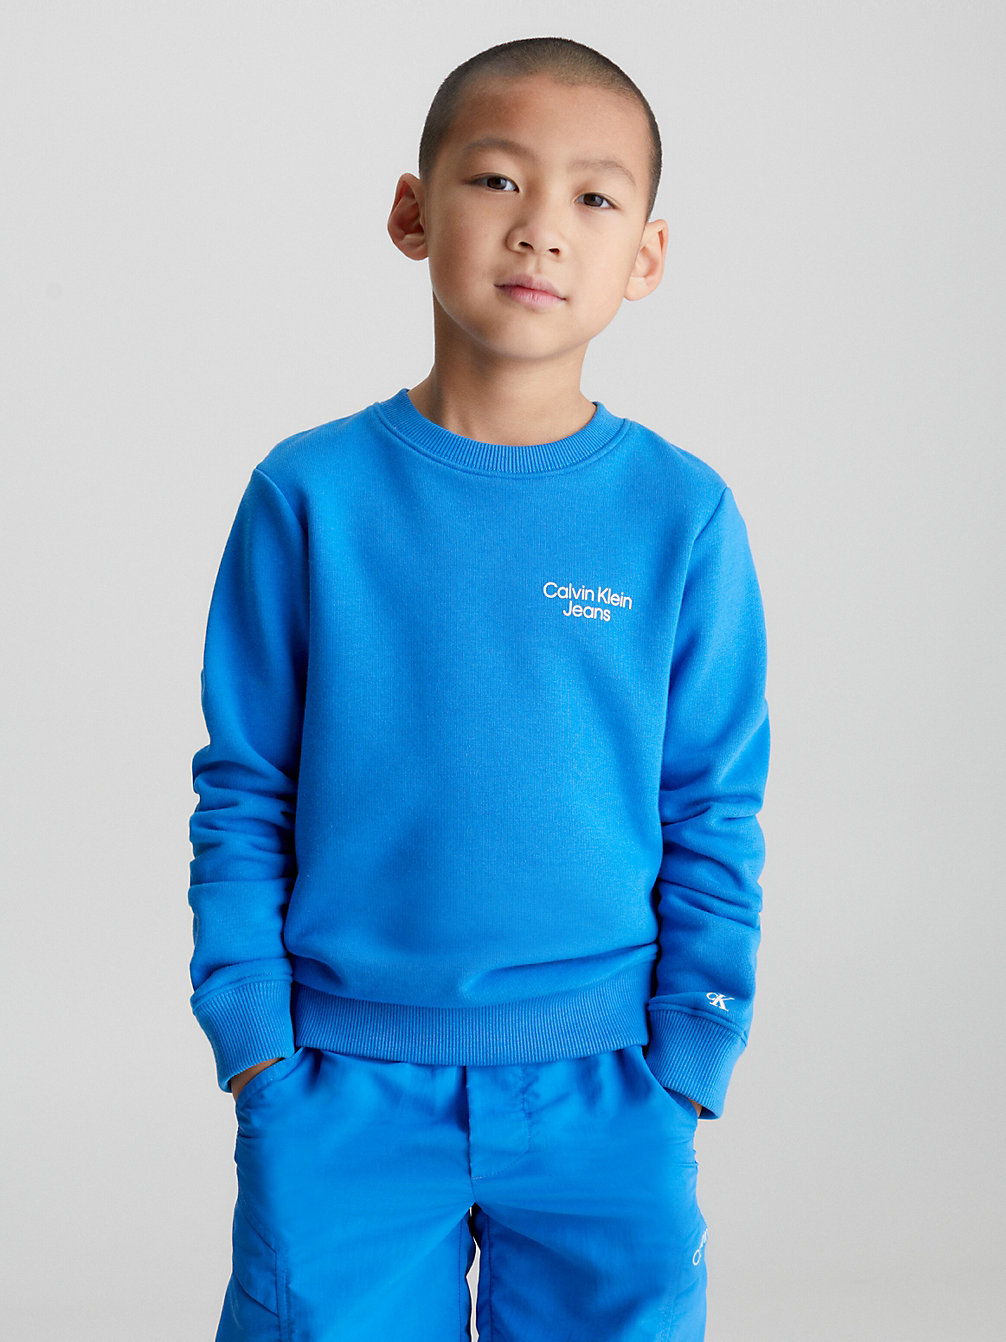 CORRIB RIVER BLUE Badstof Sweatshirt Van Biologisch Katoen undefined boys Calvin Klein